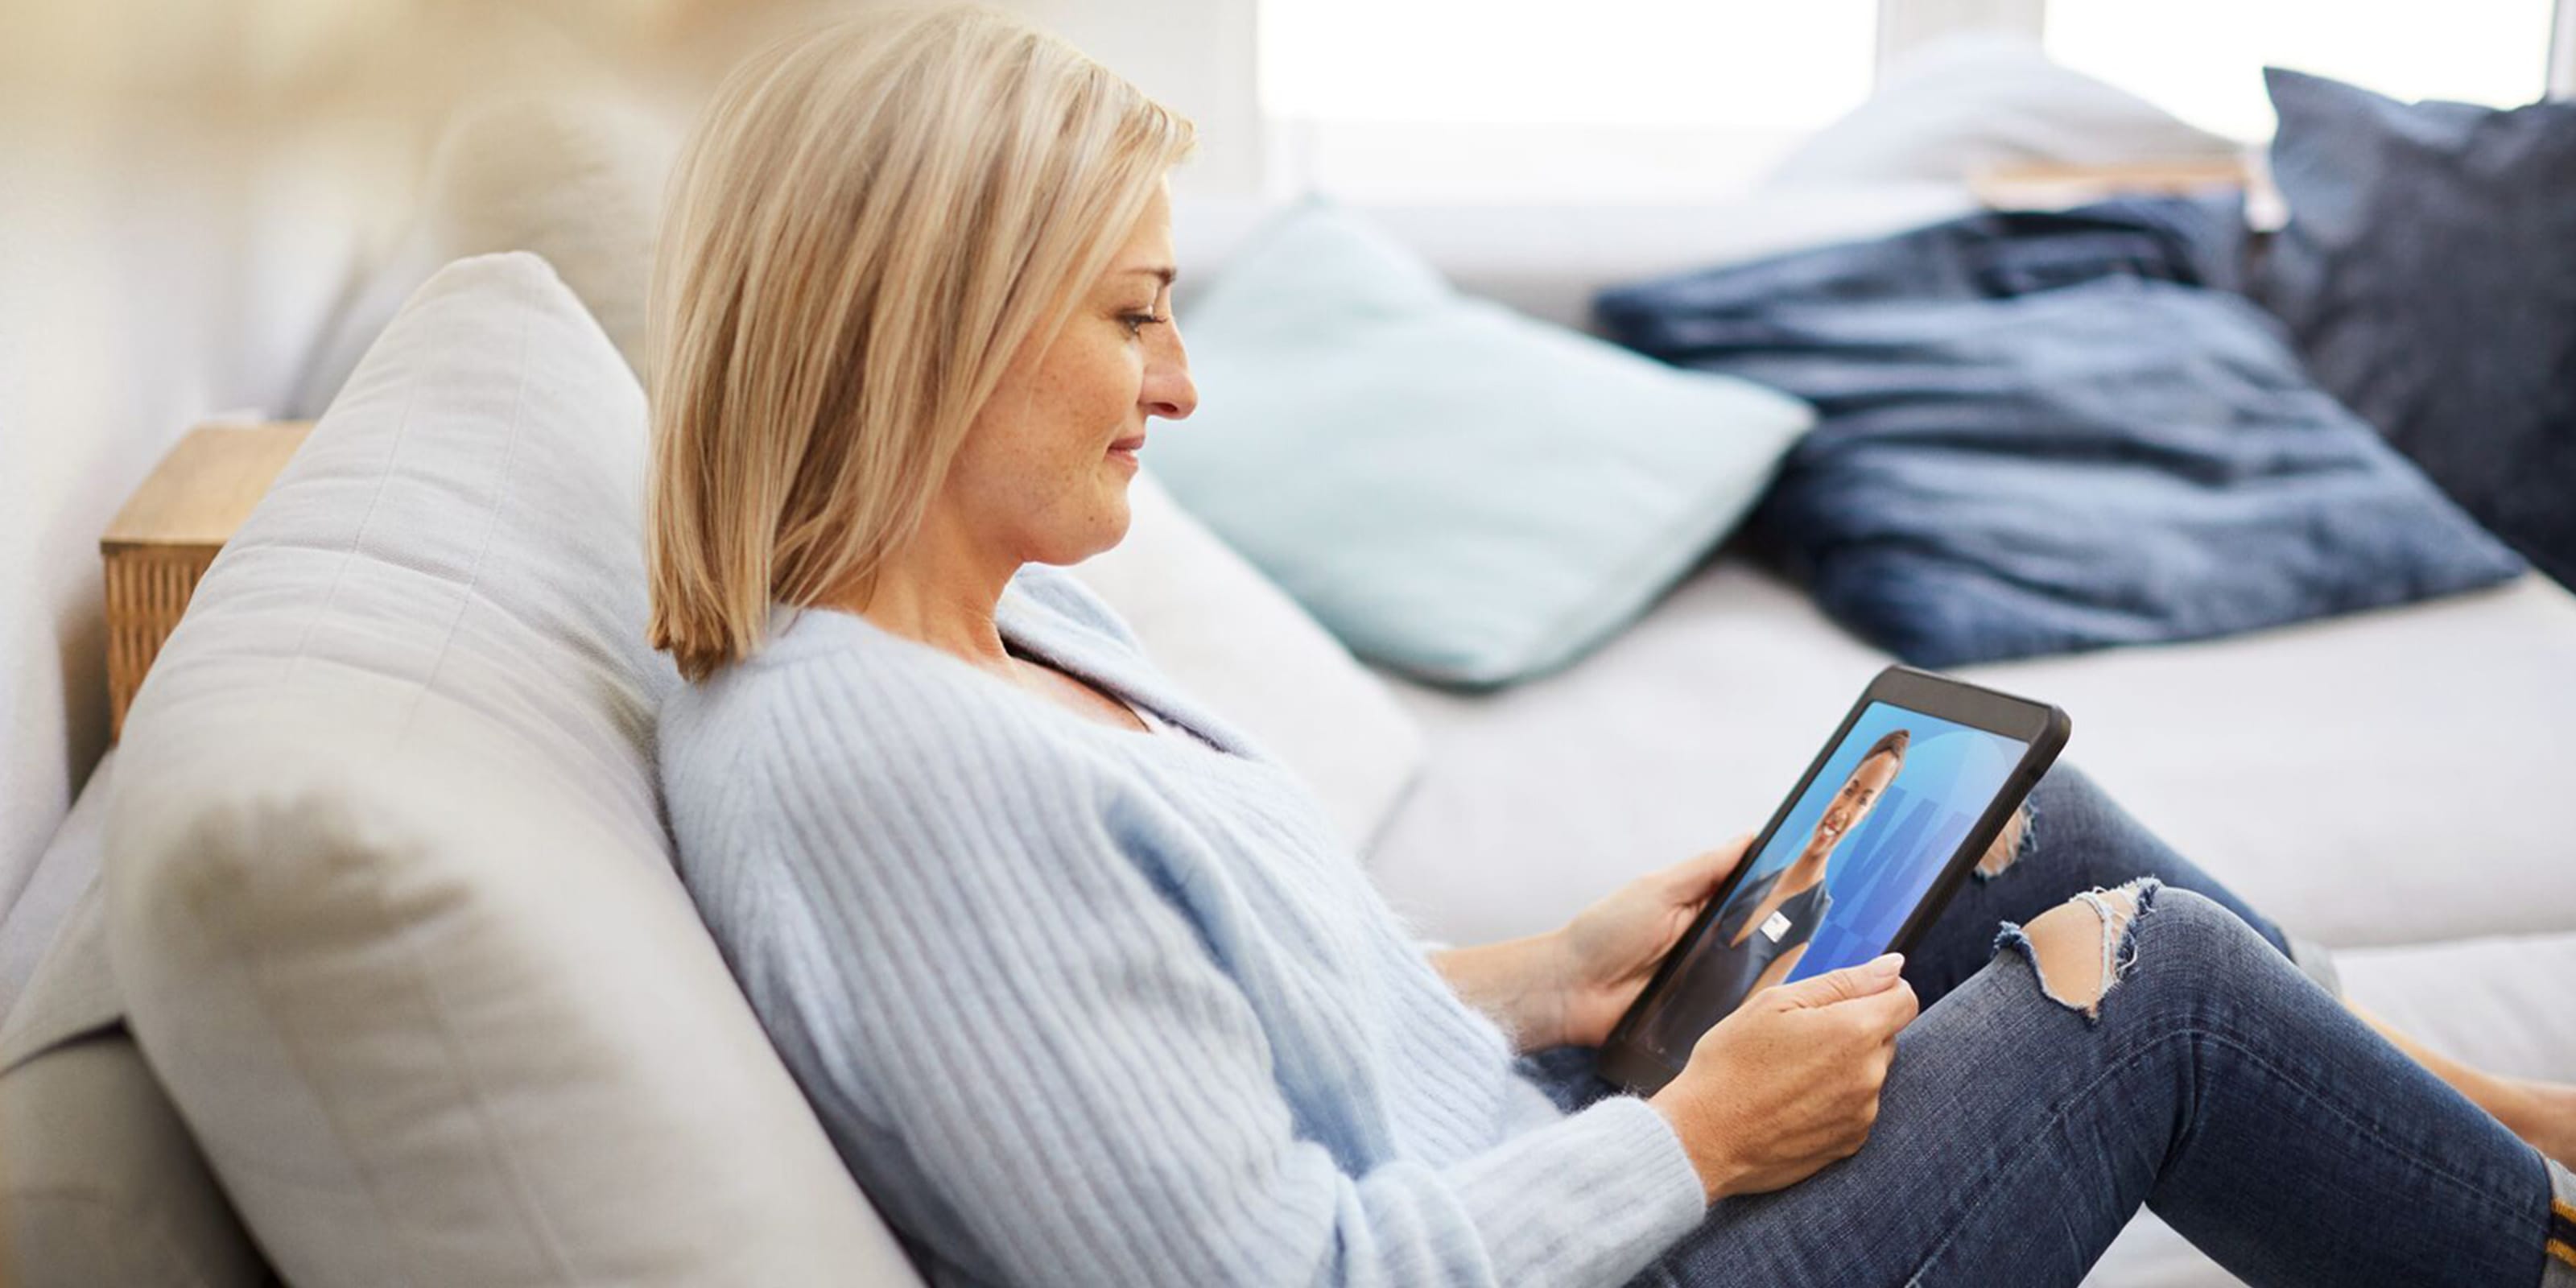 Une femme blonde en pull bleu clair est assise sur un canapé avec une tablette à la main.